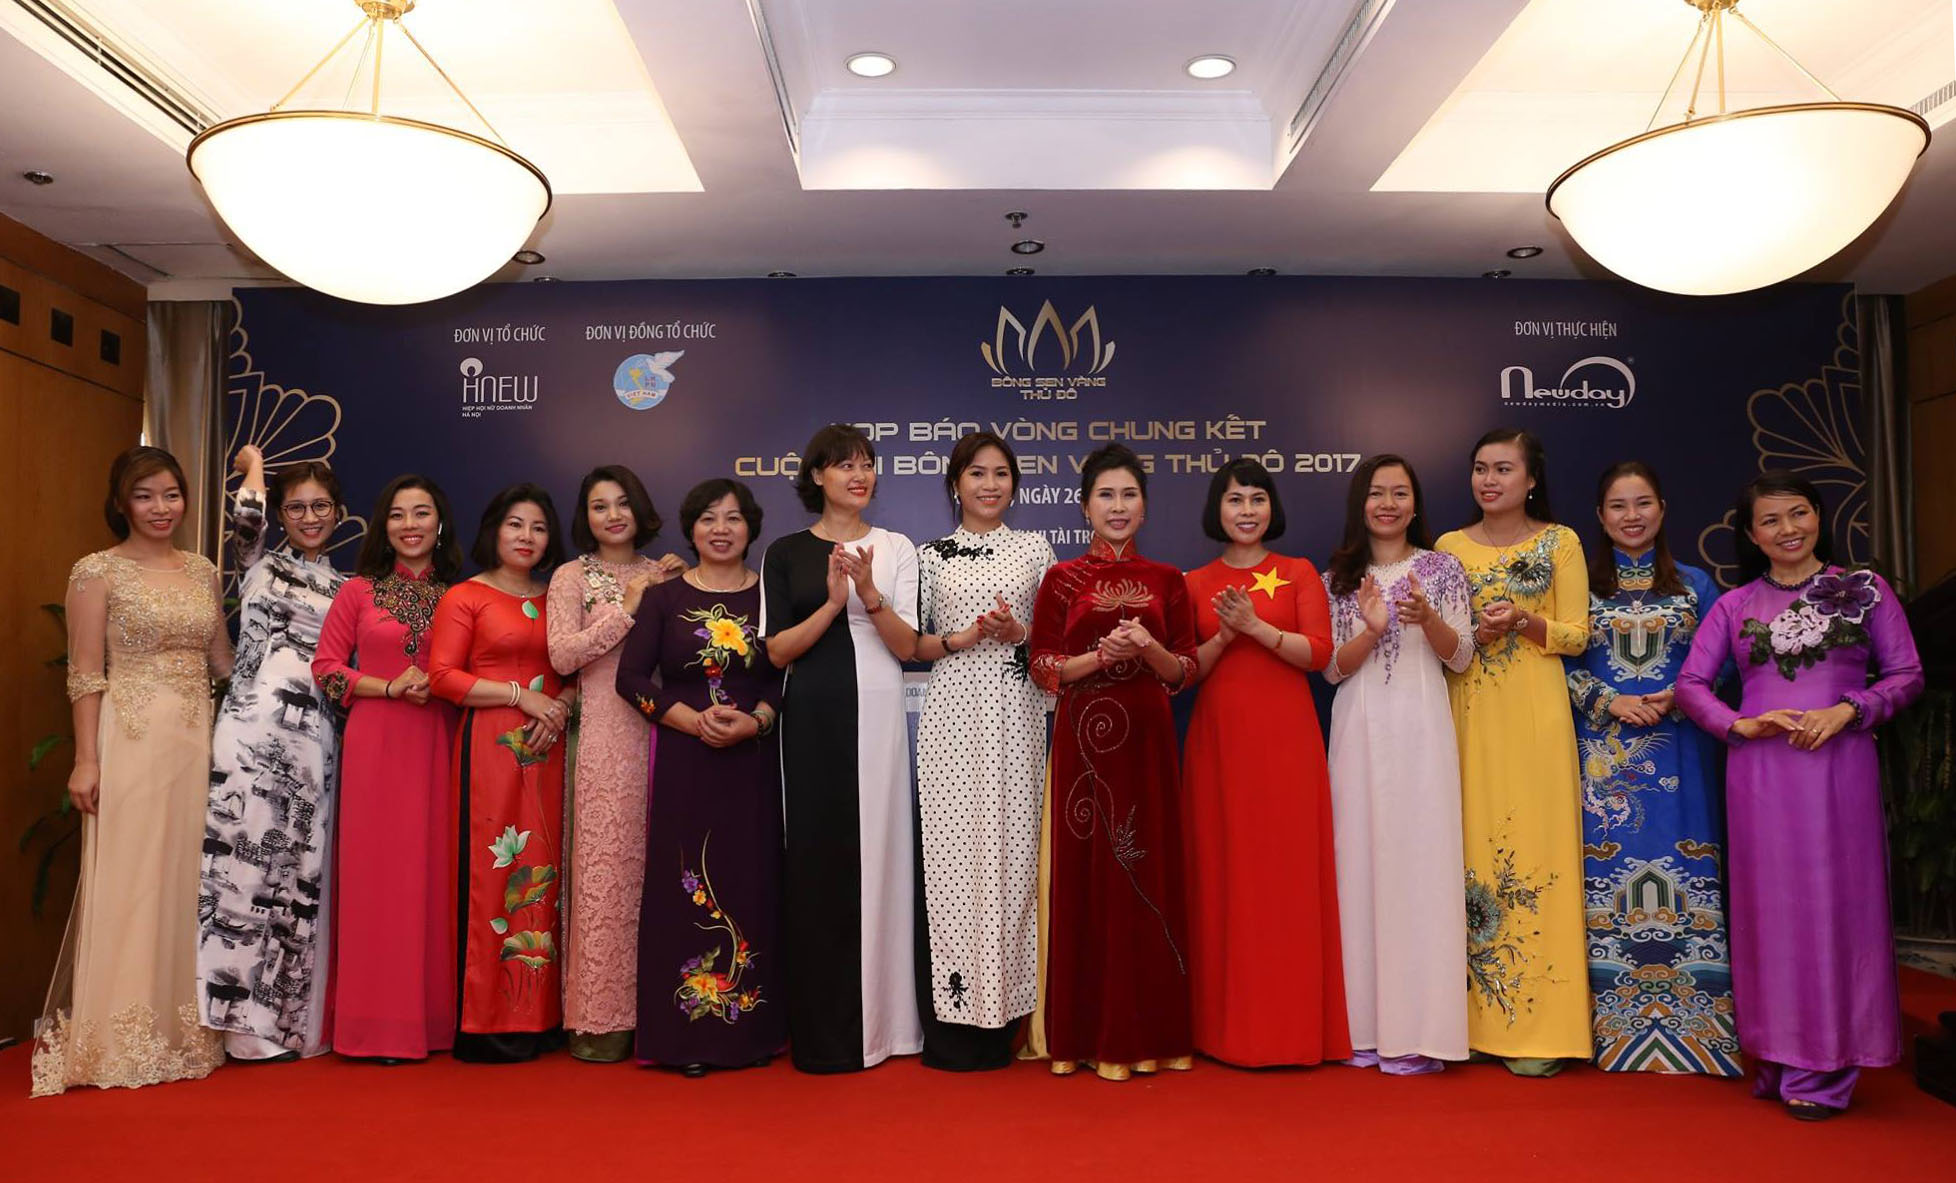 15 nữ doanh nhân lọt vào Vòng Chung kết cuộc thi Bông Sen Vàng Thủ đô 2017